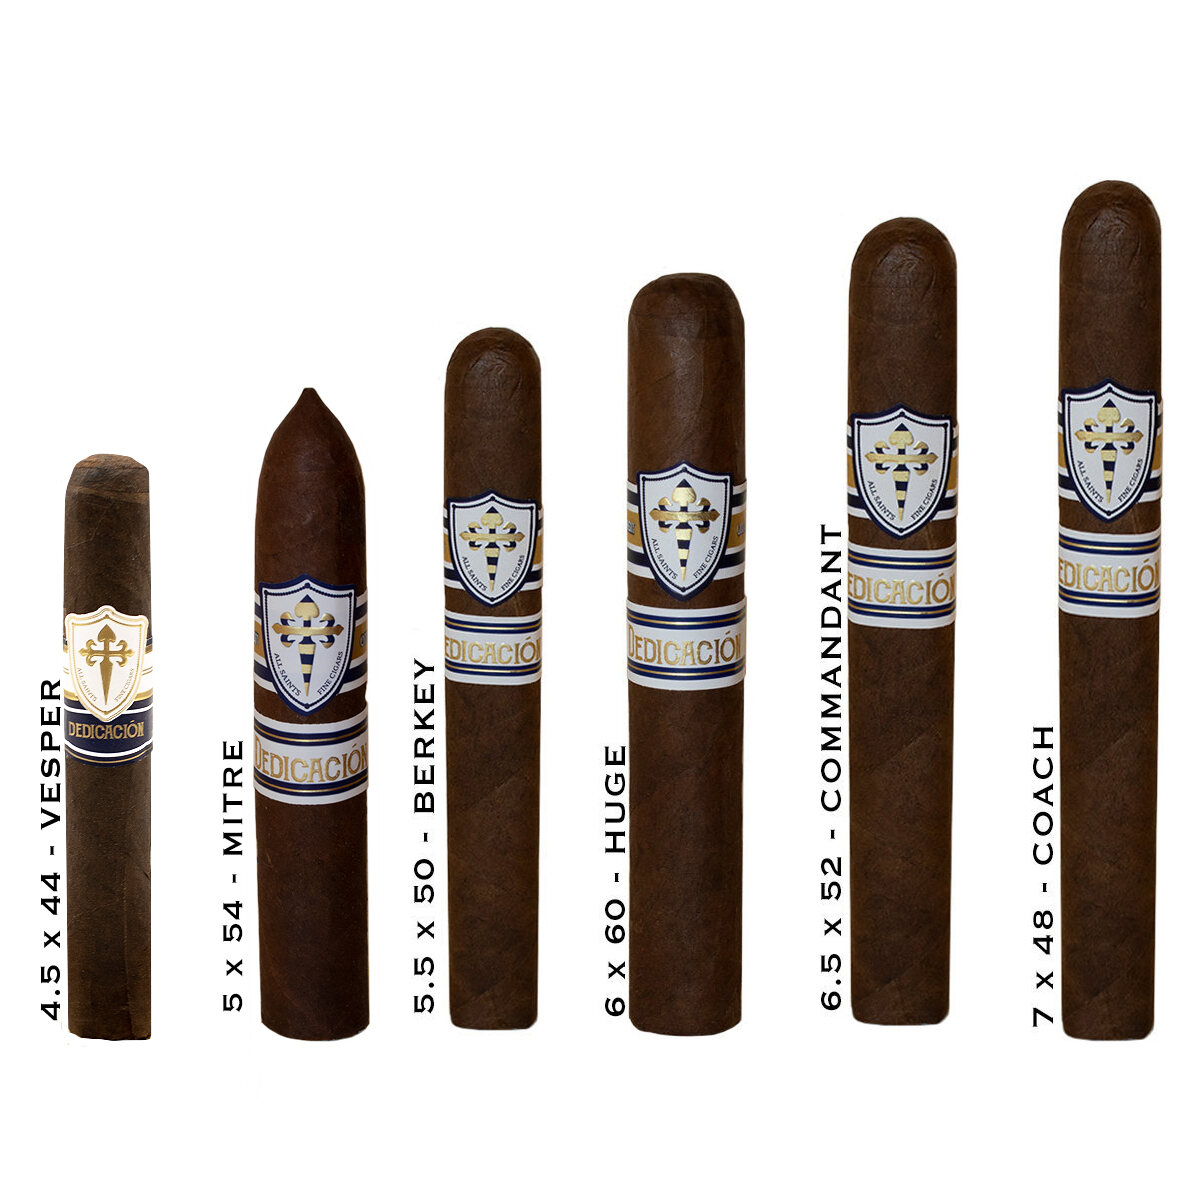 Buy All Saints Dedicacion Cigars